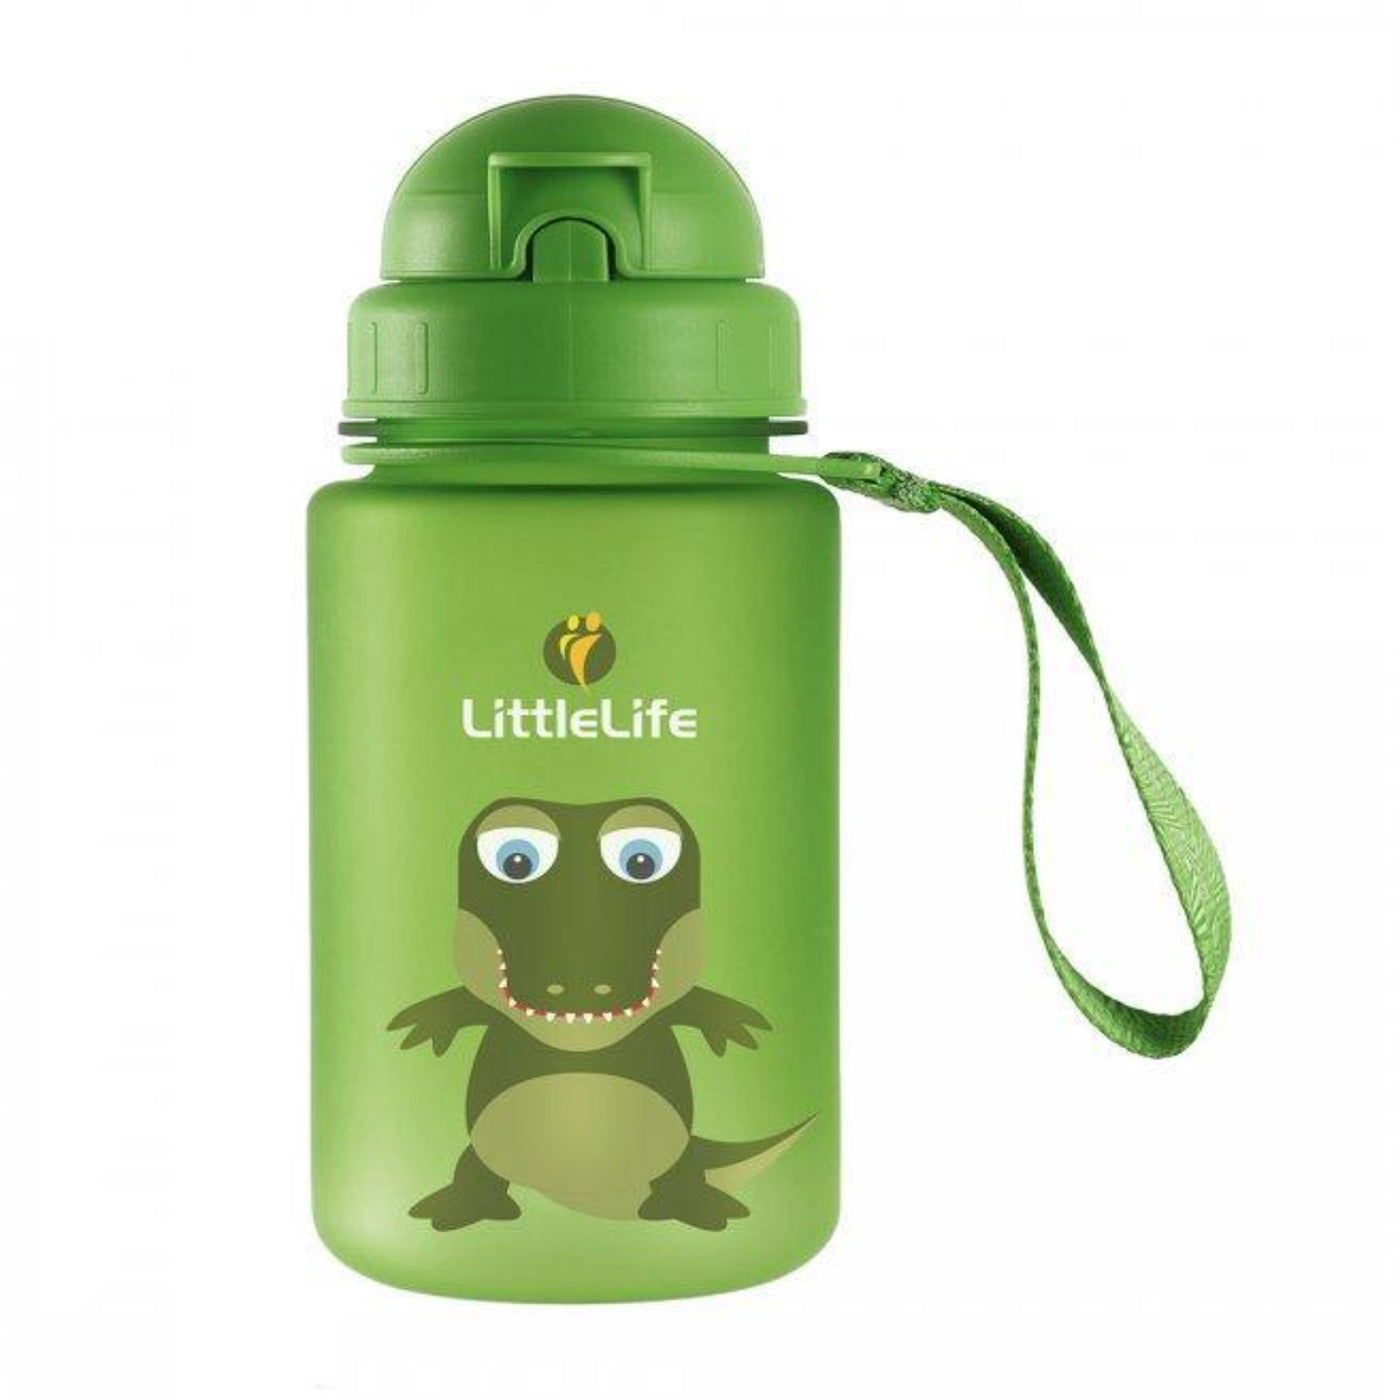 Littlelife Animal Water Bottle | Kids Outdoors Bottles | NZ #Crocodile